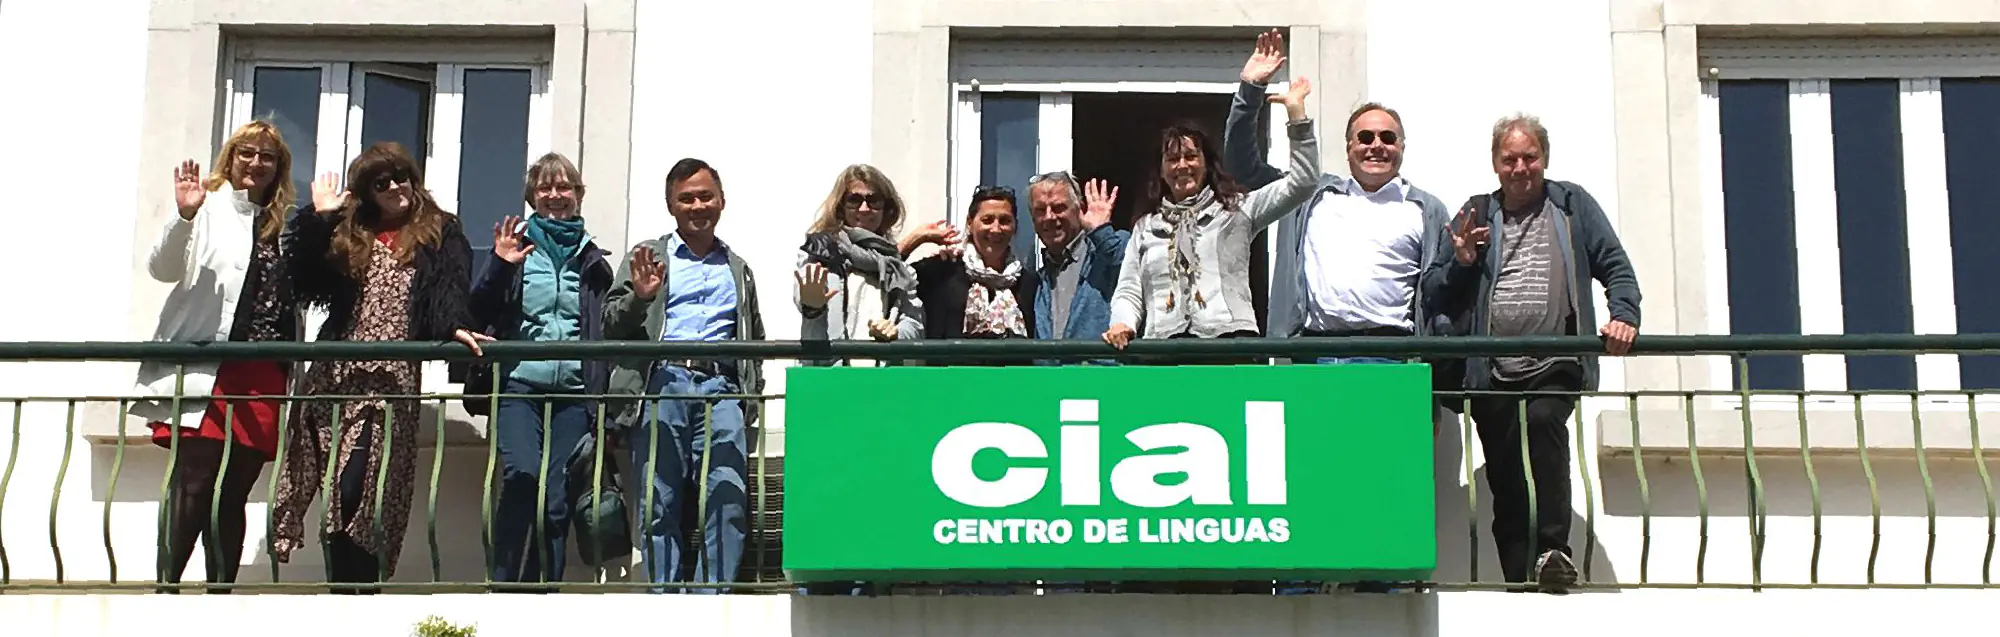 Valutazioni dei nostri ex studenti su CIAL Faro 